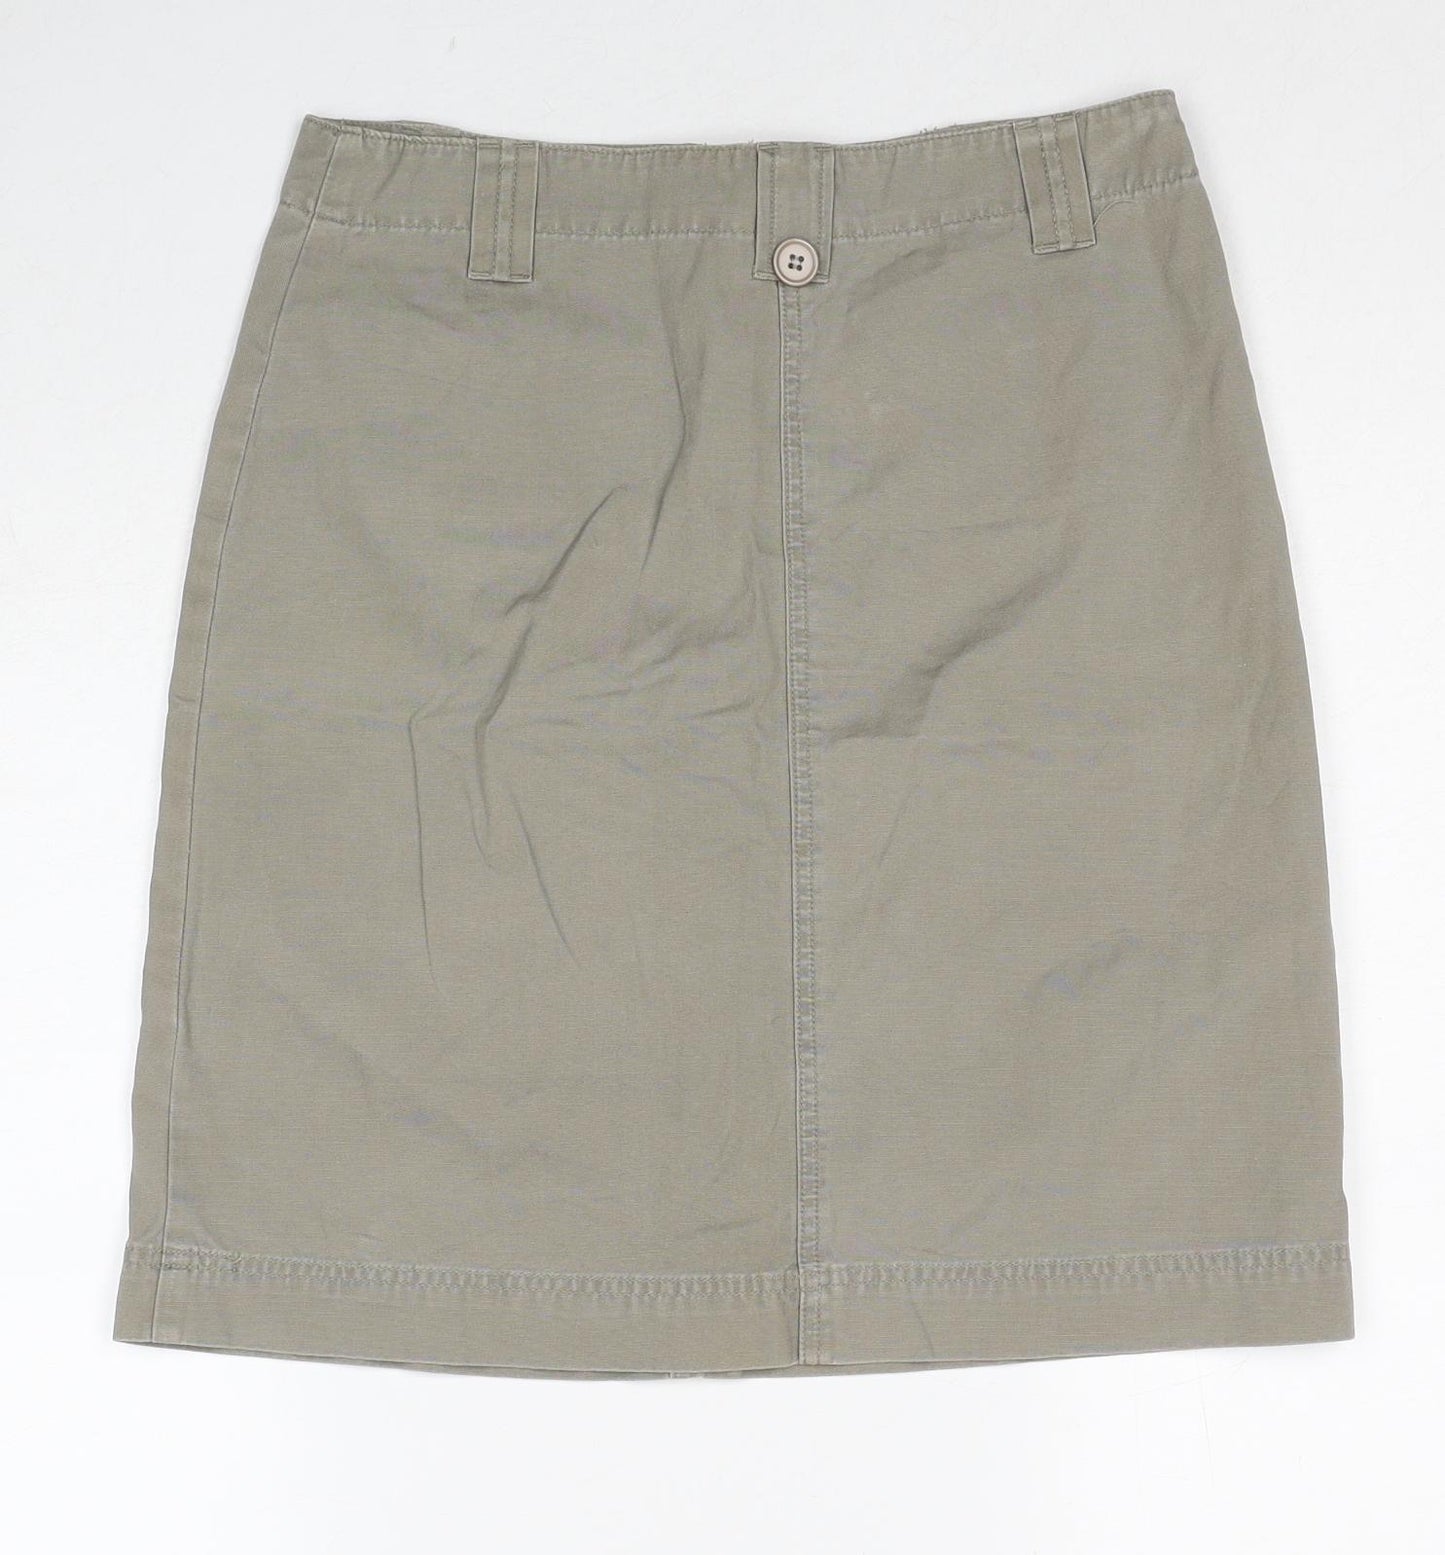 New Look Womens Beige Cotton Cargo Skirt Size 10 Zip